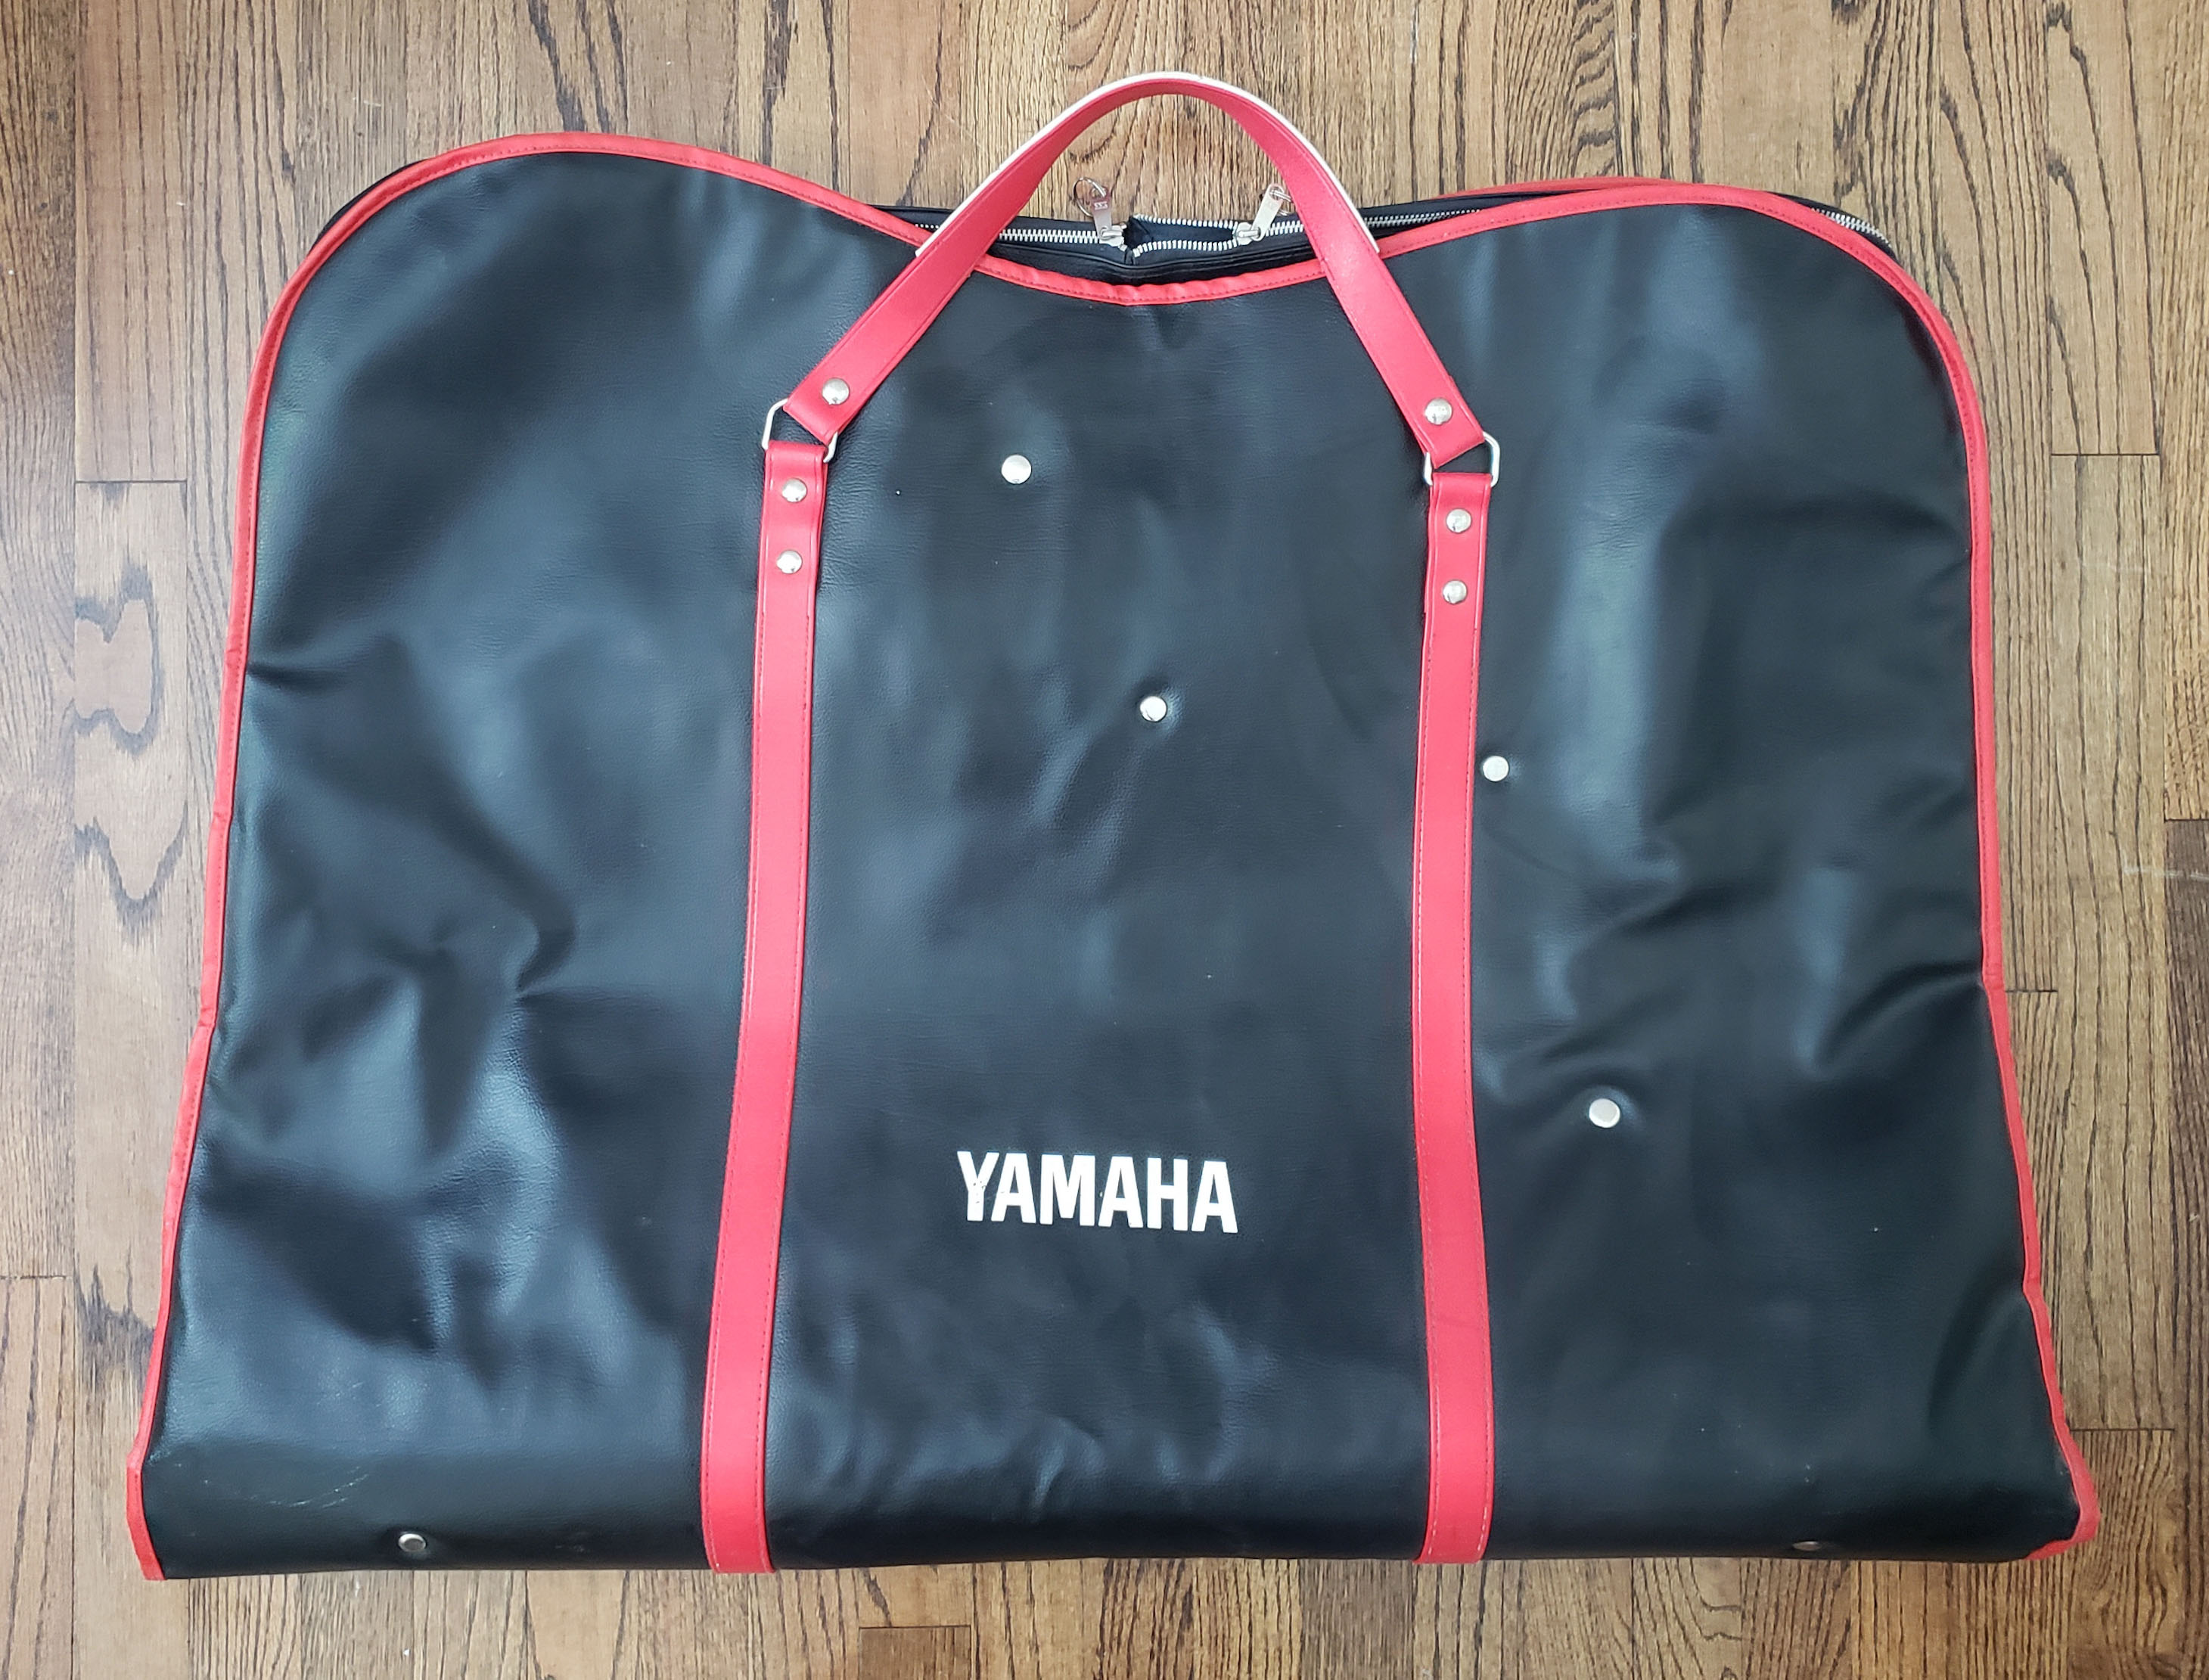 Yamaha CS80